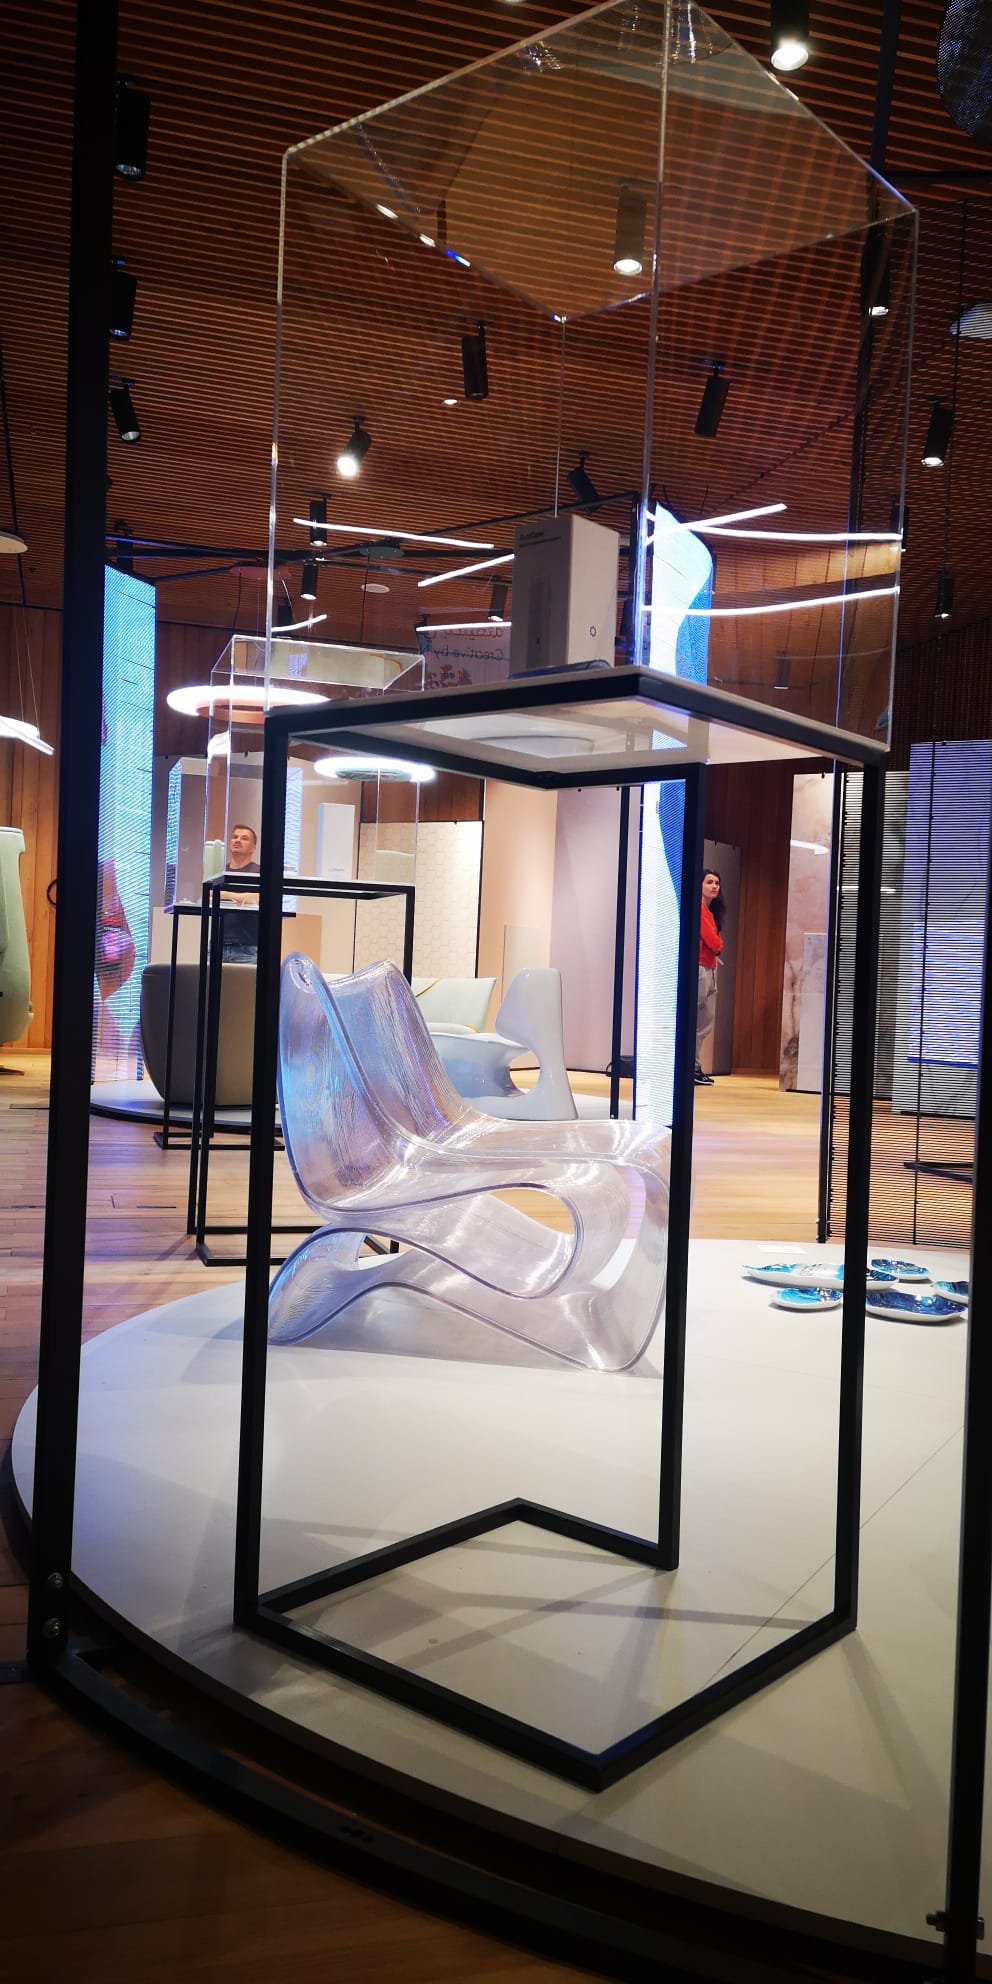 „Creative by nature” – nowa wystawa Urzędu Patentowego RP na EXPO 2020 w Dubaju